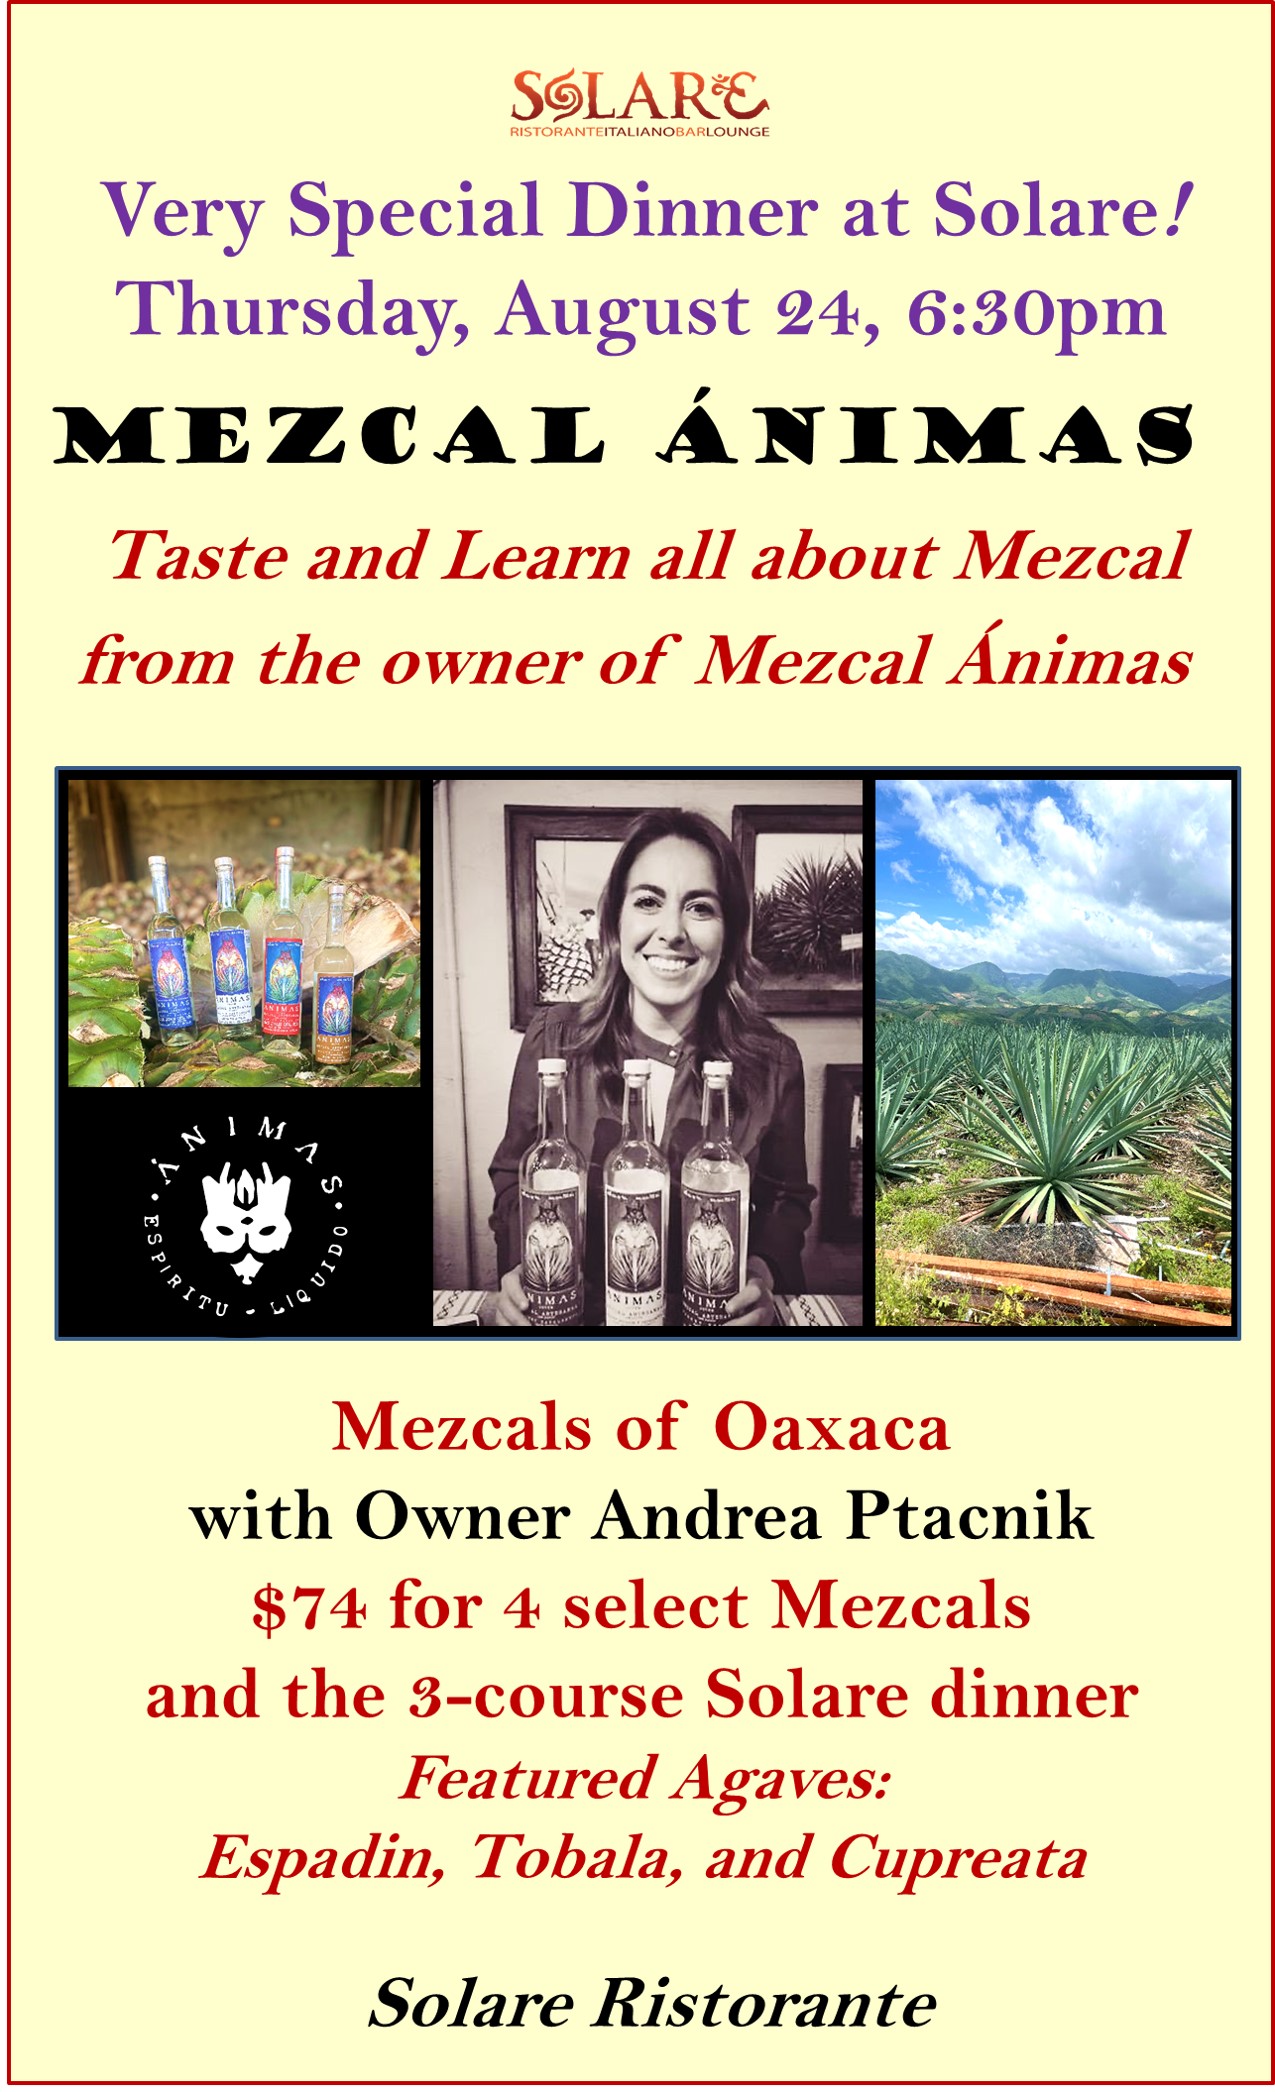 <a id="Solare-Mezcal-Animas-Dinner"></a>Mezcal Animas Dinner - agaves from Oaxaca